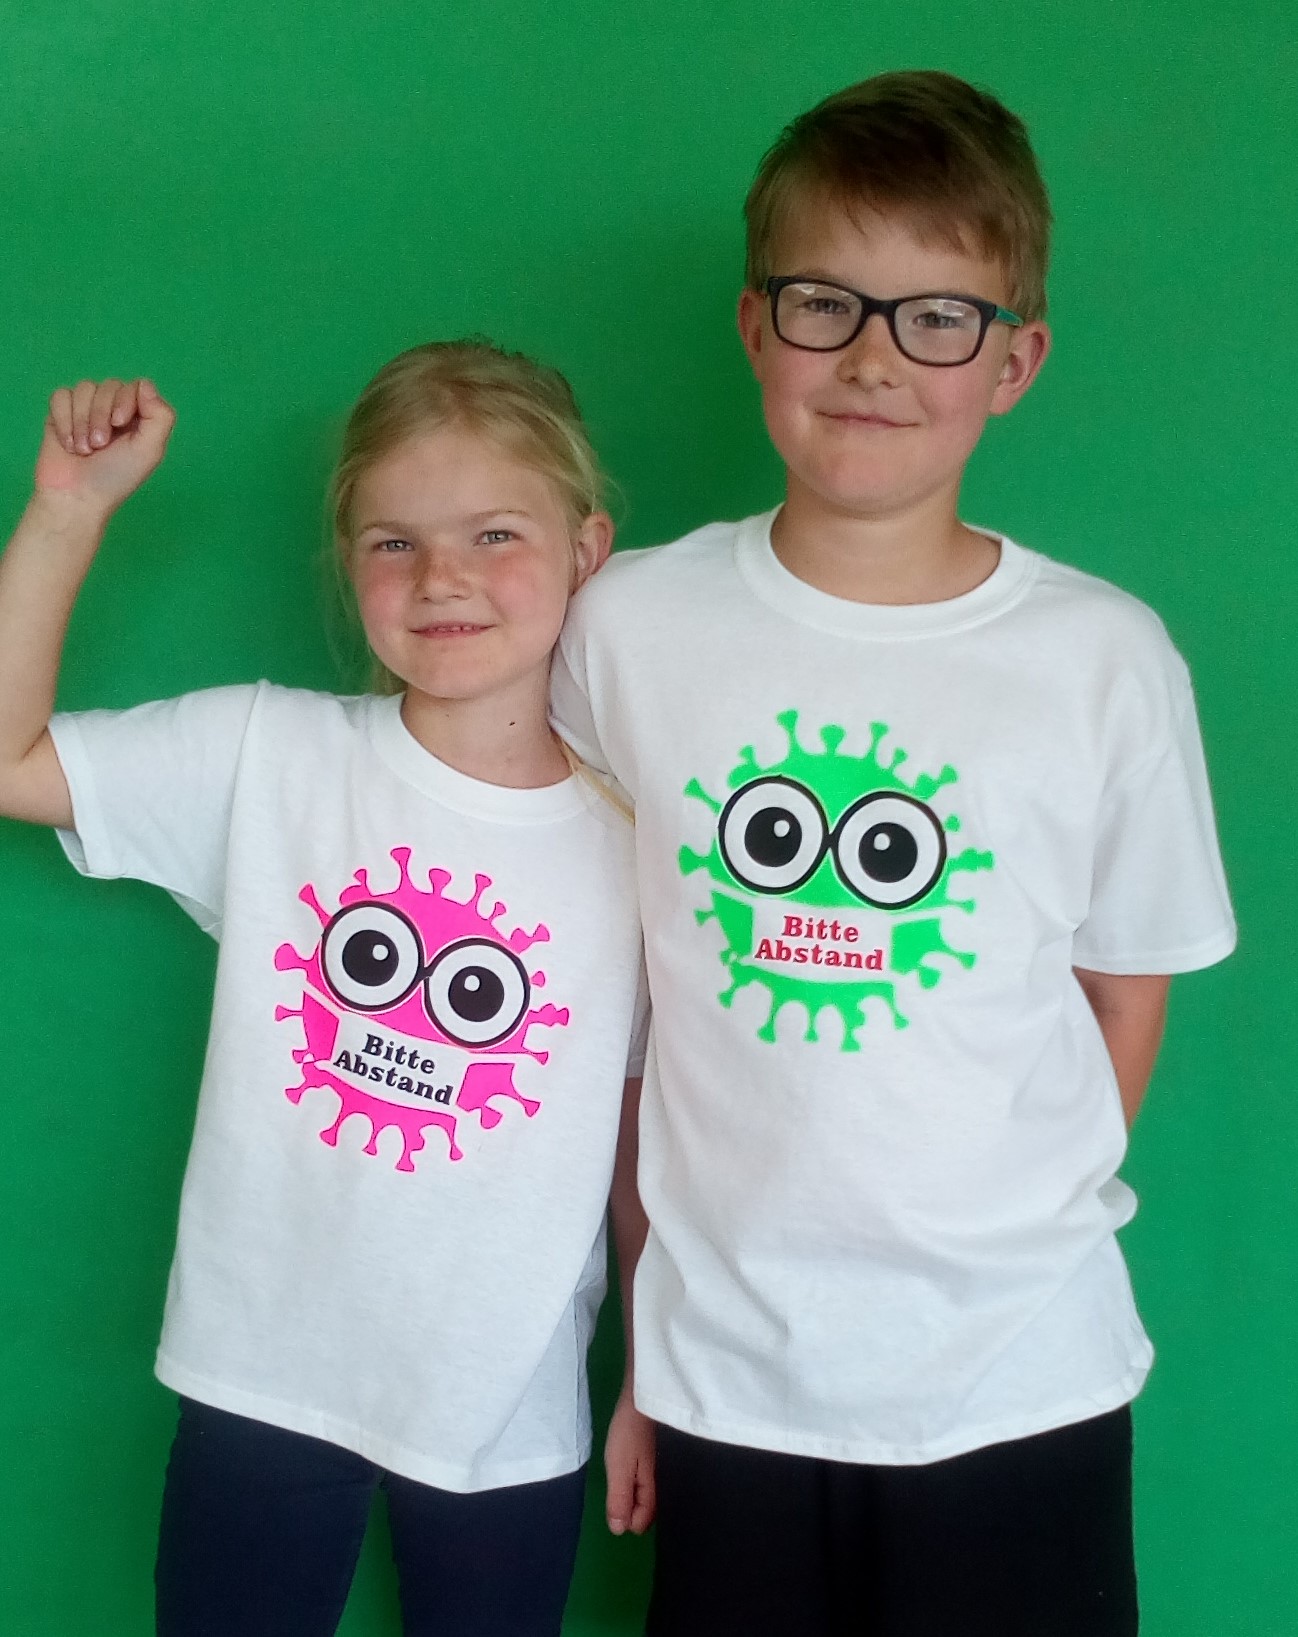 Kinder T-Shirt Bitte Abstand halten / Corona Shirt / Virus grün